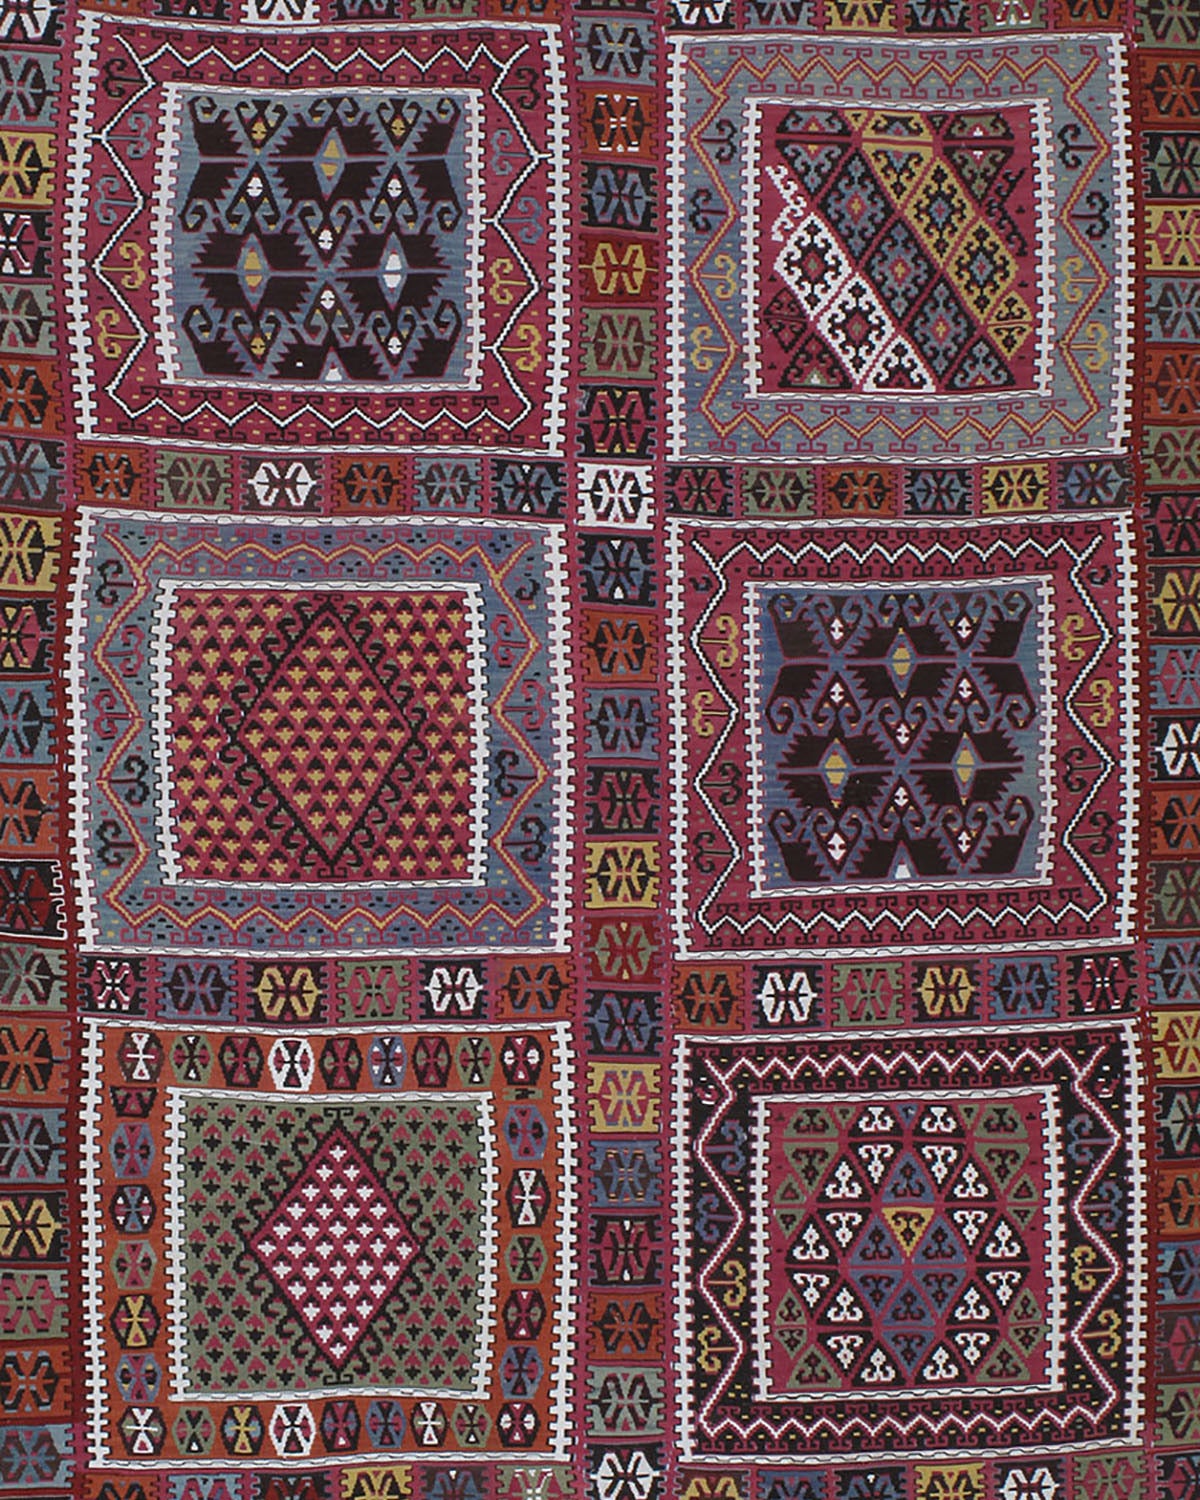 Hervorragender antiker Bayburt-Kilim-Teppich. Ein großartiger antiker Kelimteppich aus dem Nordosten der Türkei, fein gewebt mit exquisiten Details, in einer schillernden Farbpalette, die aus natürlichen Farbstoffen abgeleitet ist. Bayburt-Kelims